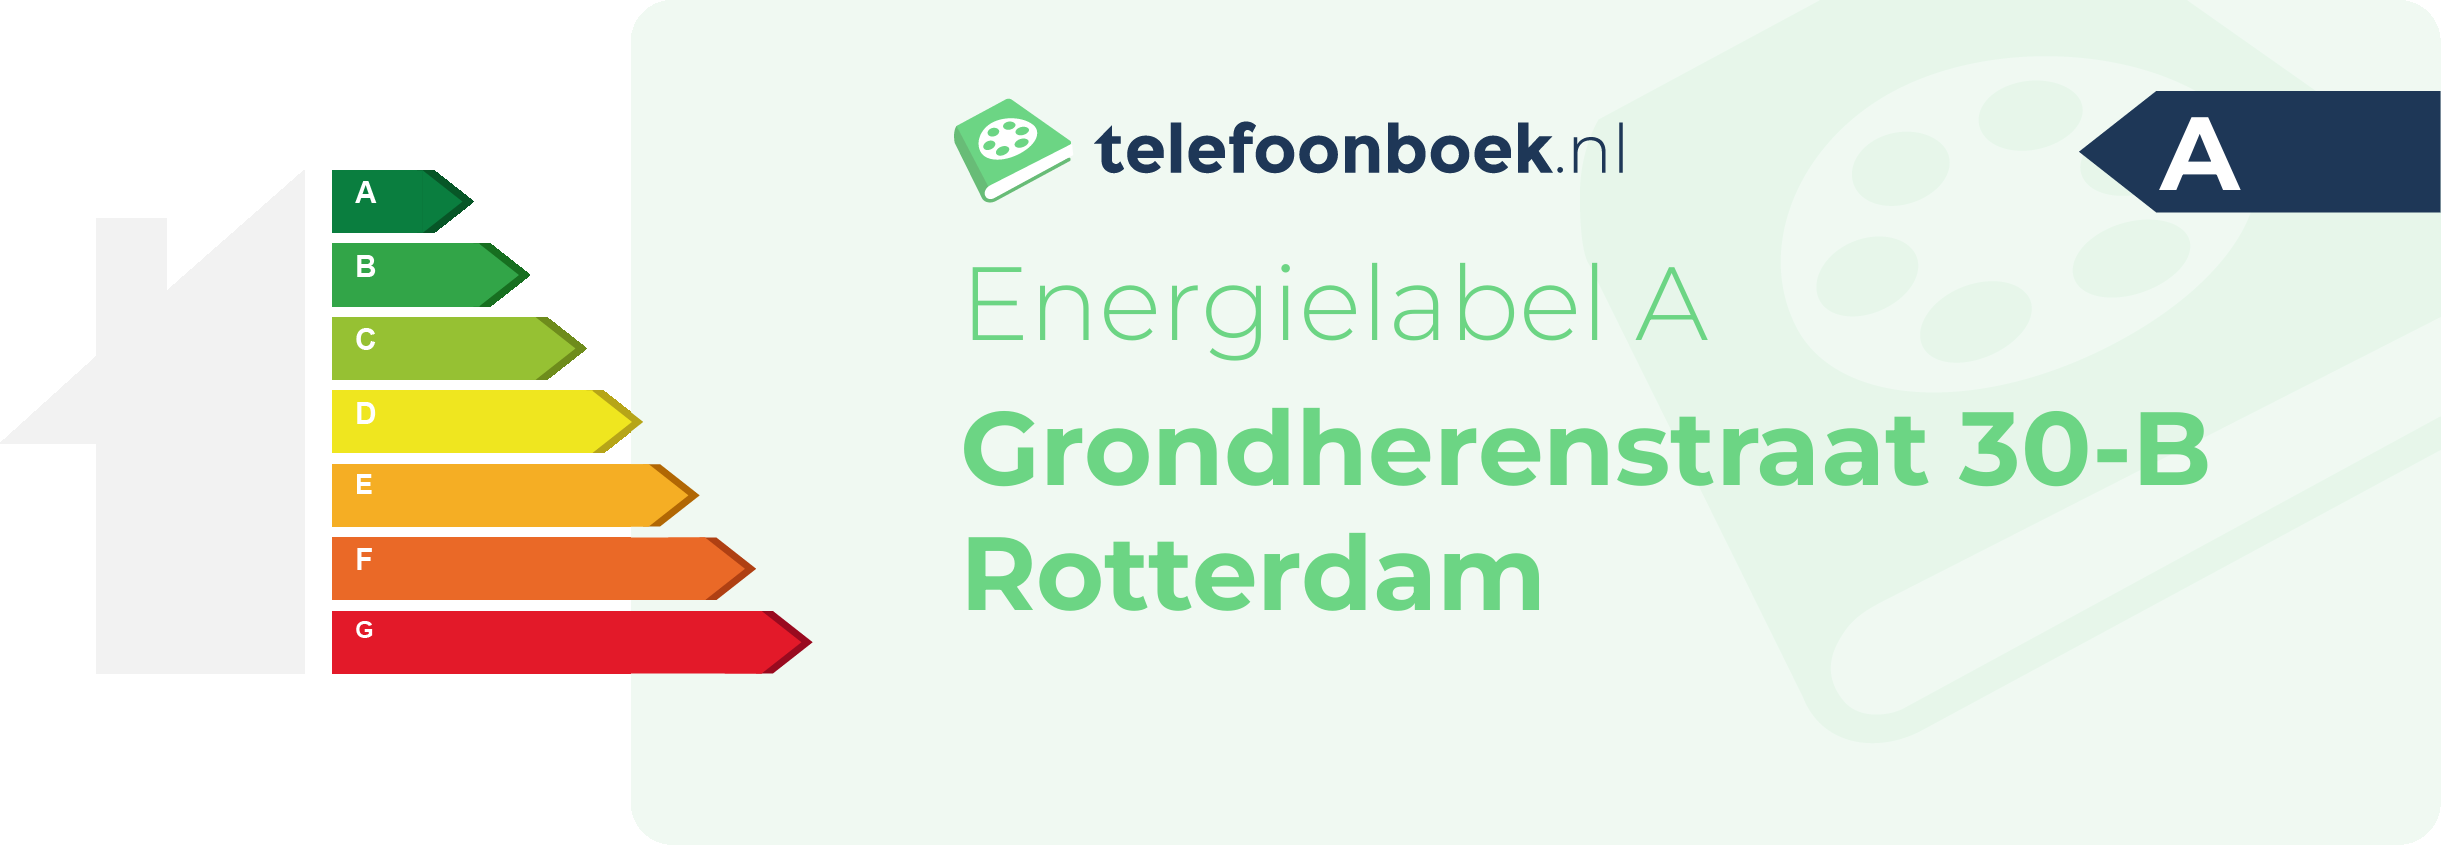 Energielabel Grondherenstraat 30-B Rotterdam